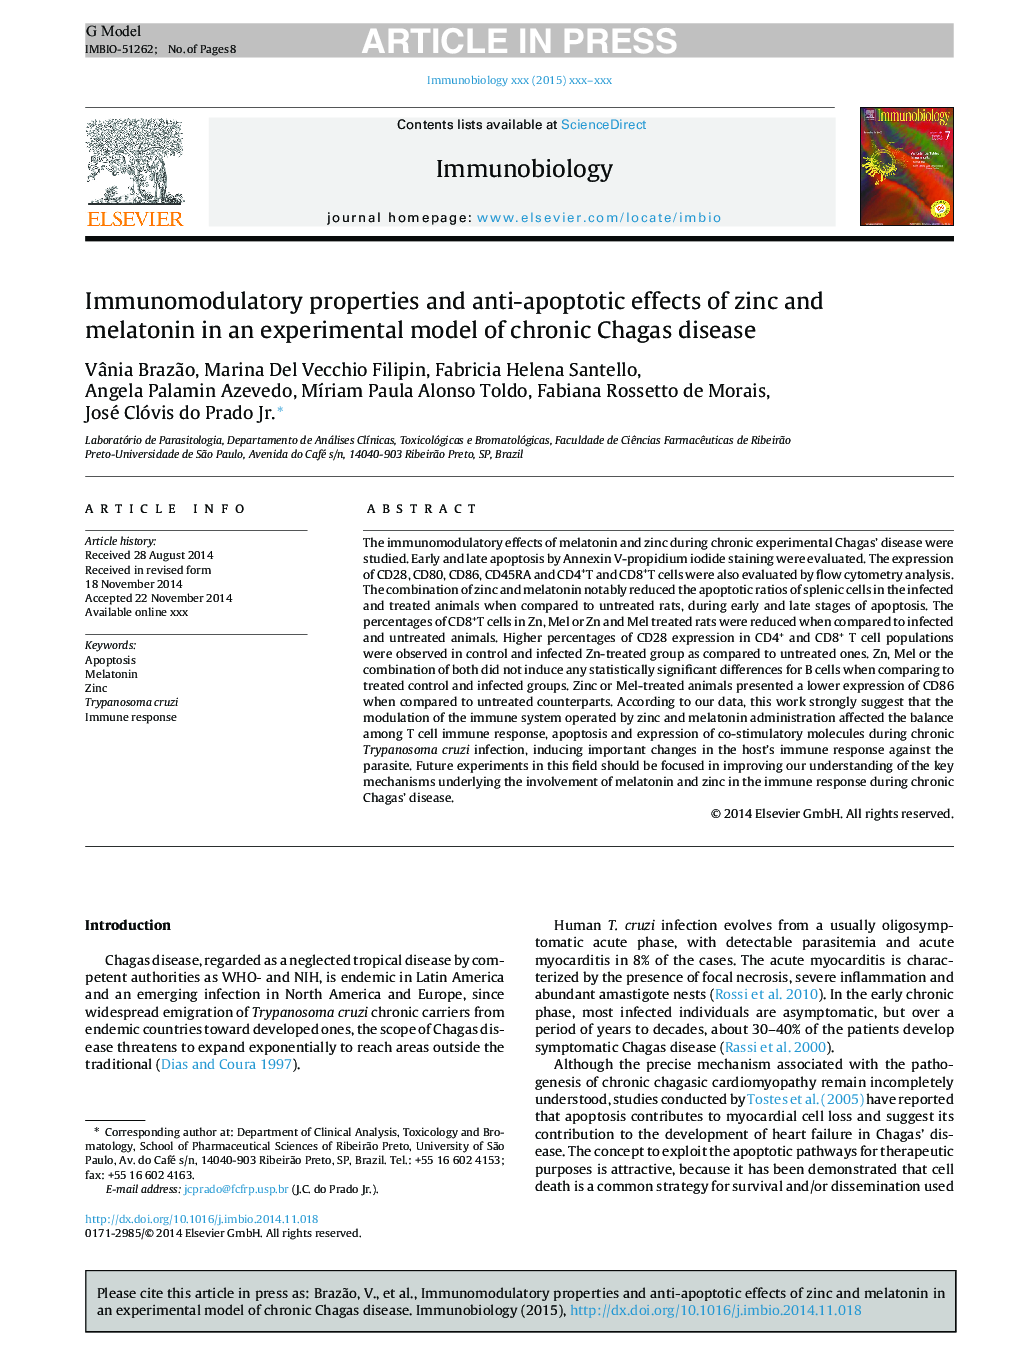 خواص ایمنی سازمانی و اثرات ضد آپوپتوز روی و ملاتونین در یک مدل تجربی از بیماری مزمن چاگاس 